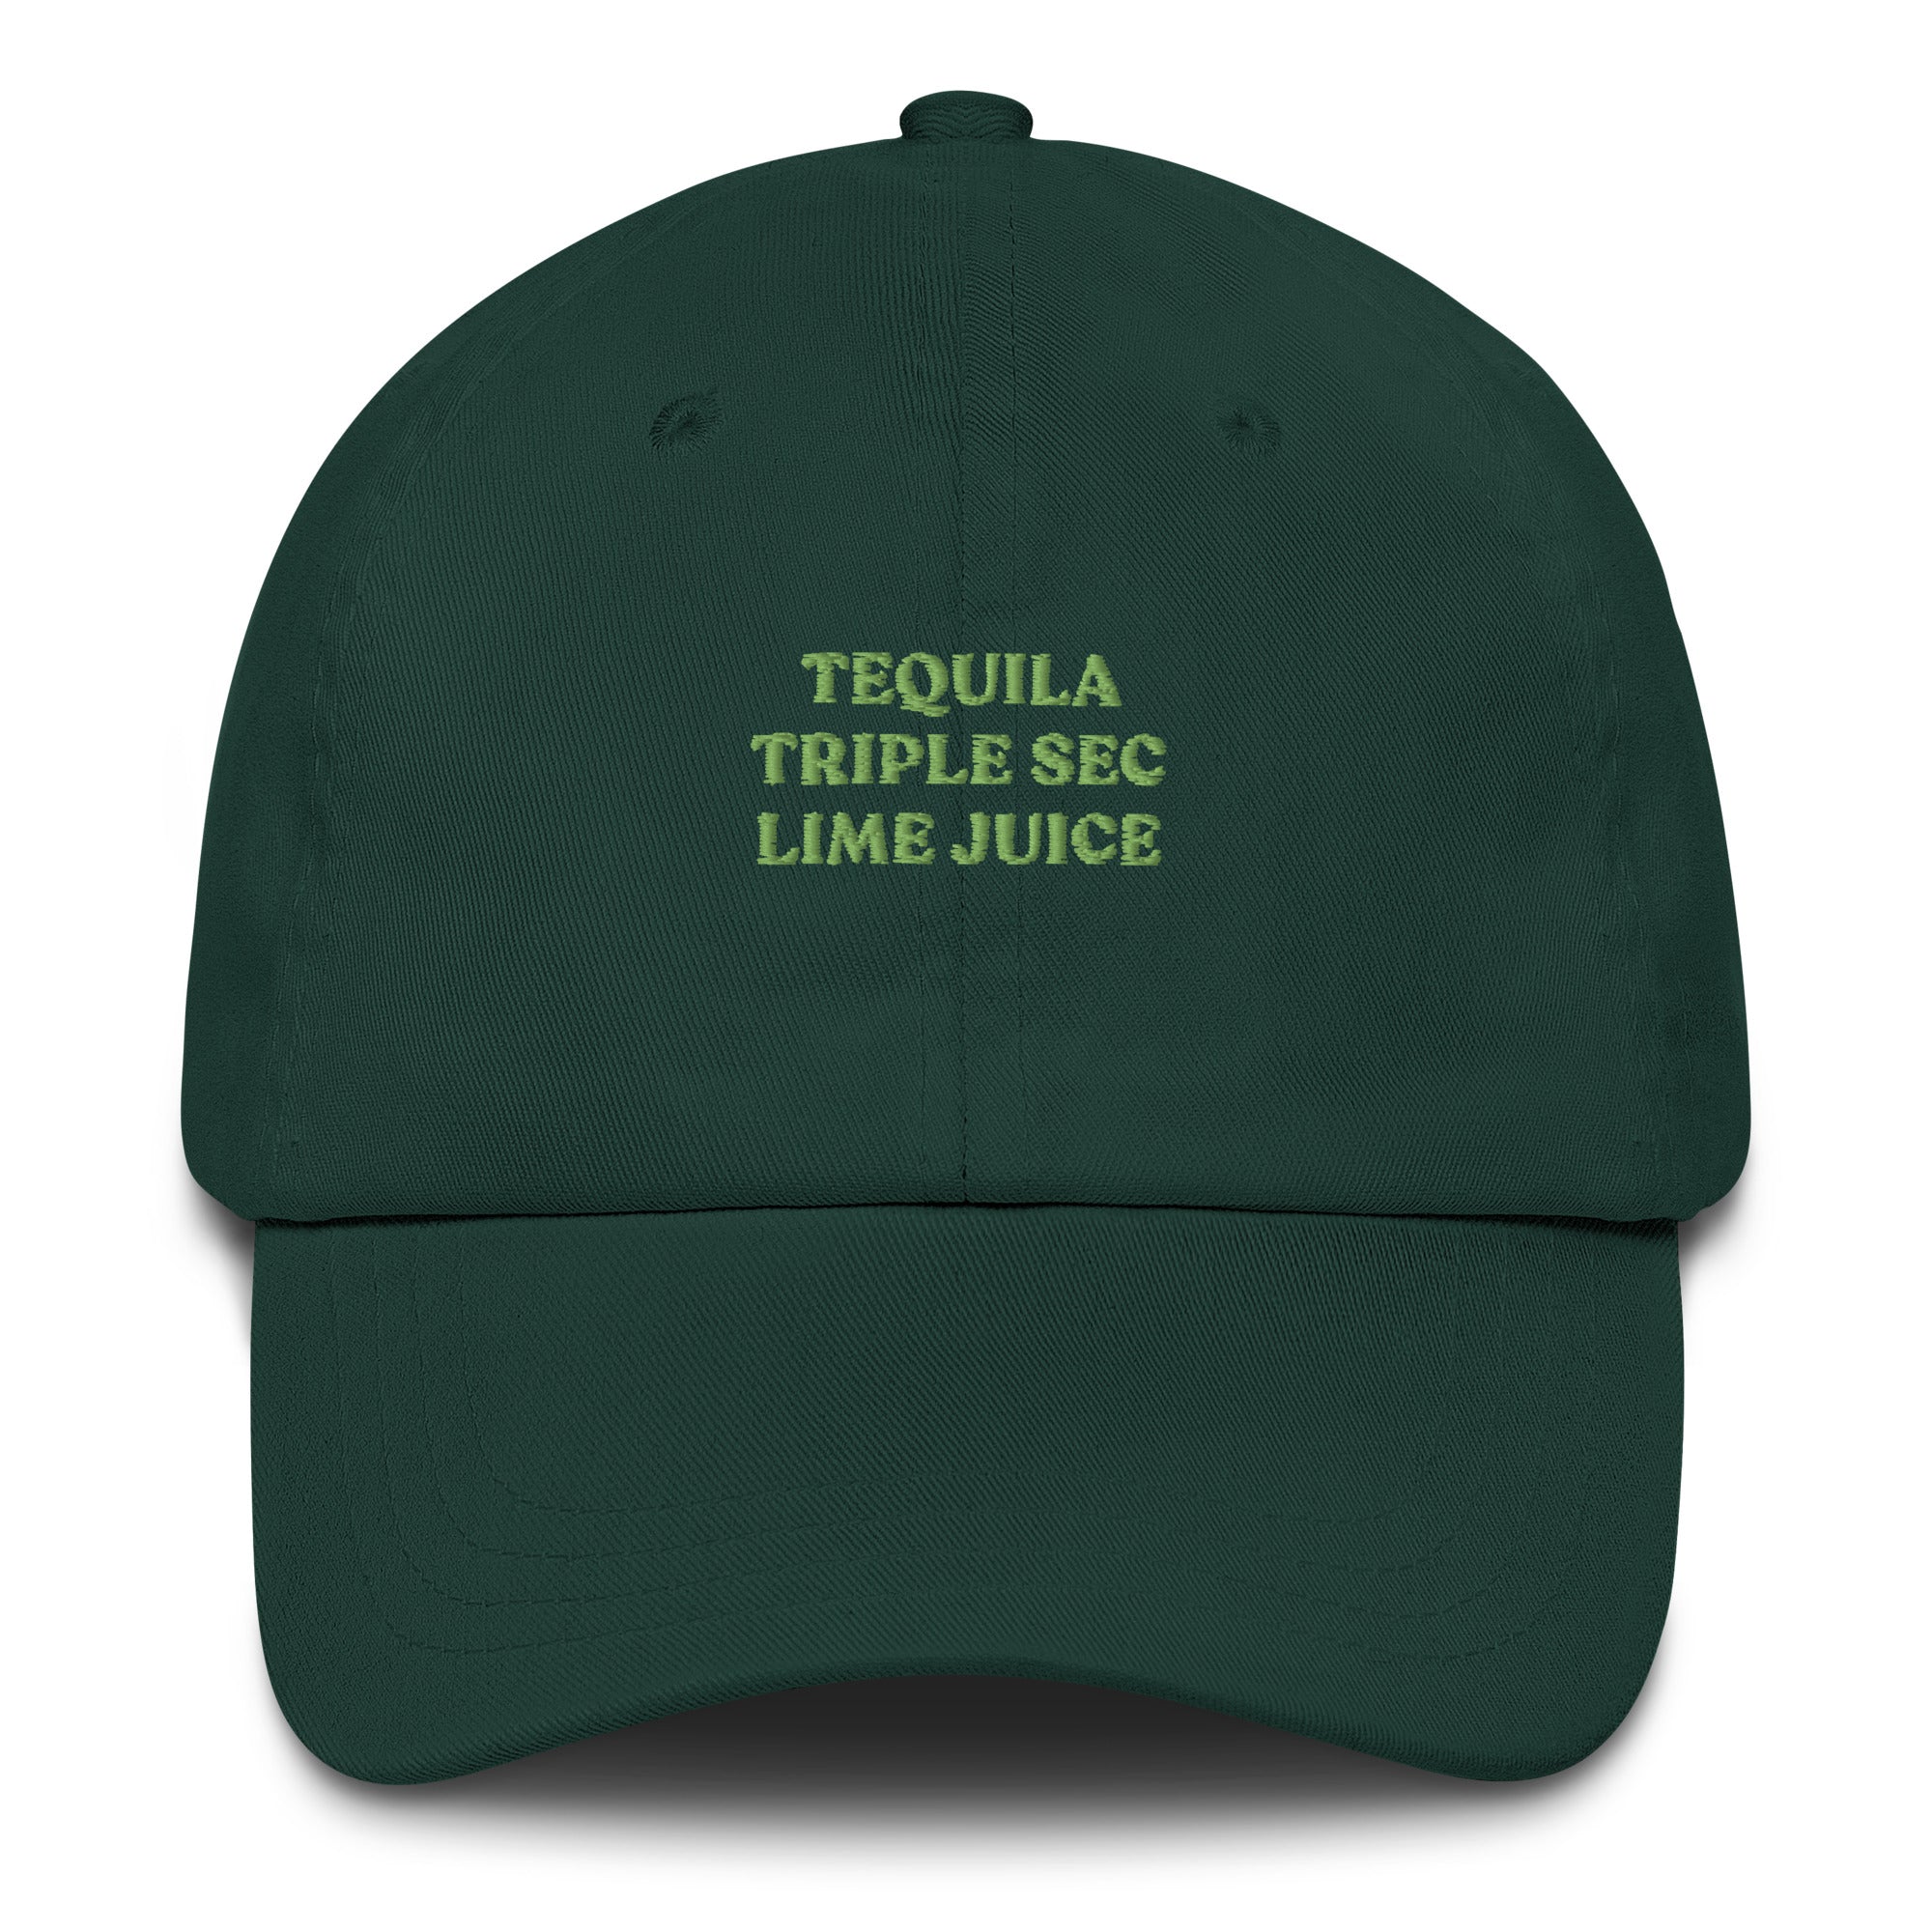 Tequila Triple Sec Lime Juice - Cap